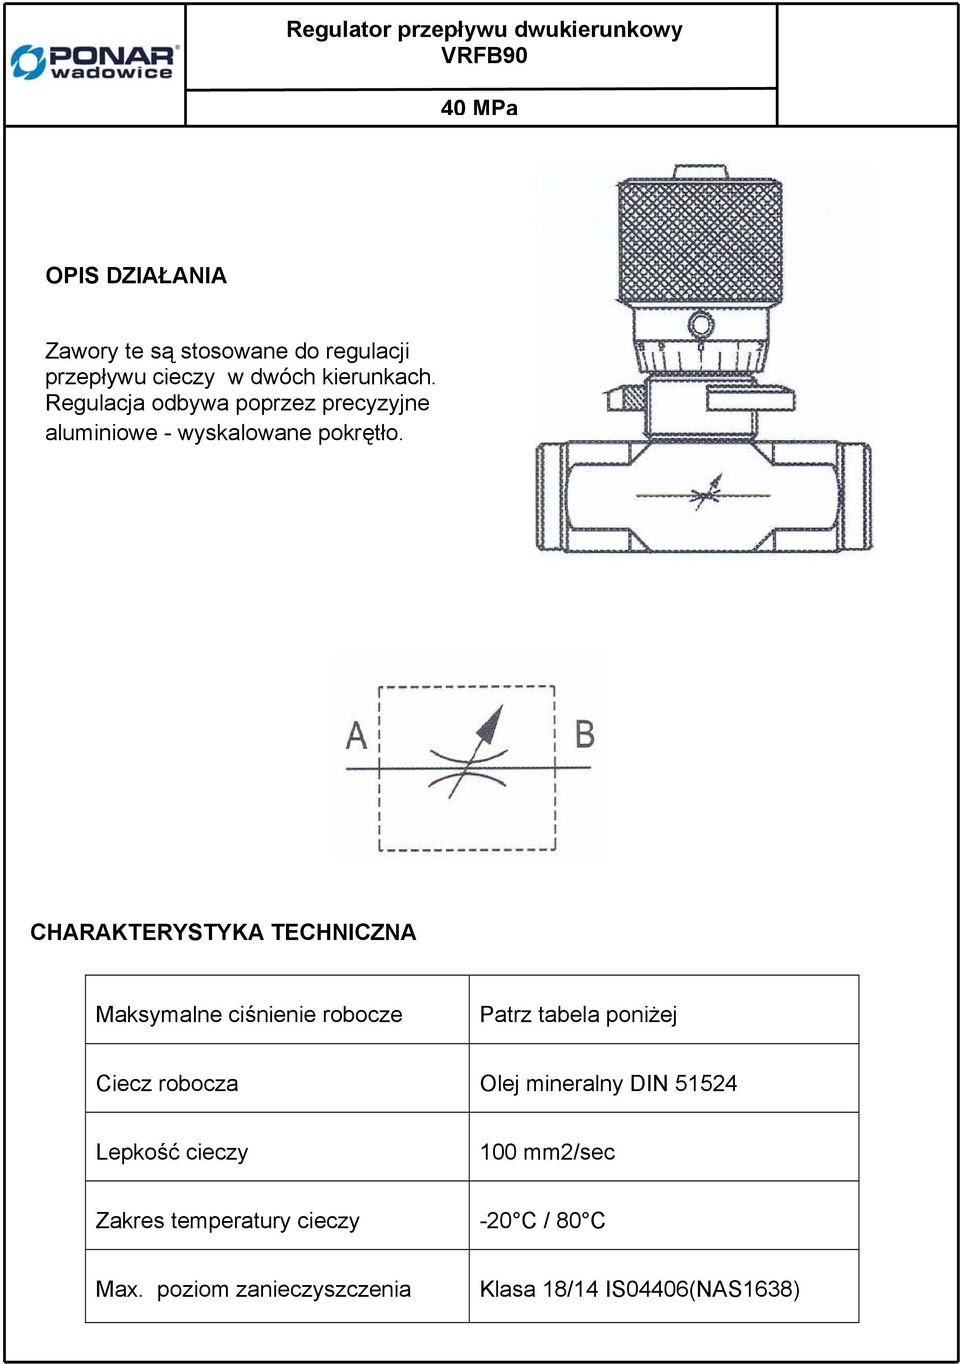 CHARAKTERYSTYKA TECHNICZNA Maksymalne ciśnienie robocze Patrz tabela poniżej Ciecz robocza Olej mineralny DIN